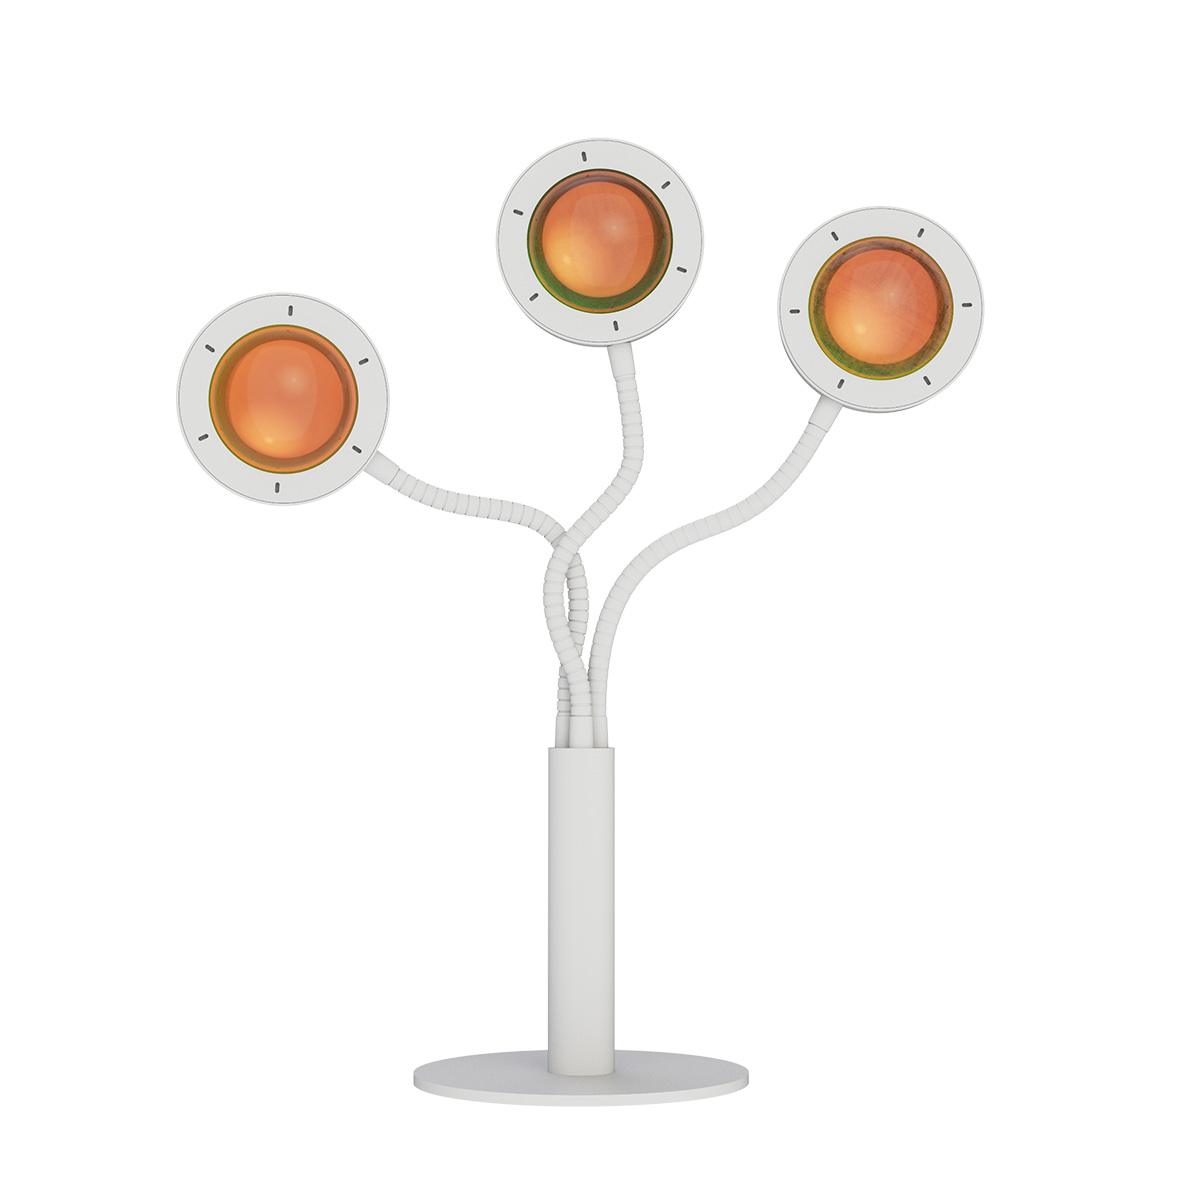 Tangla lighting - TLT7345-03SW - Table lamp 3 Lights - metal + glass - sand white - flower aura